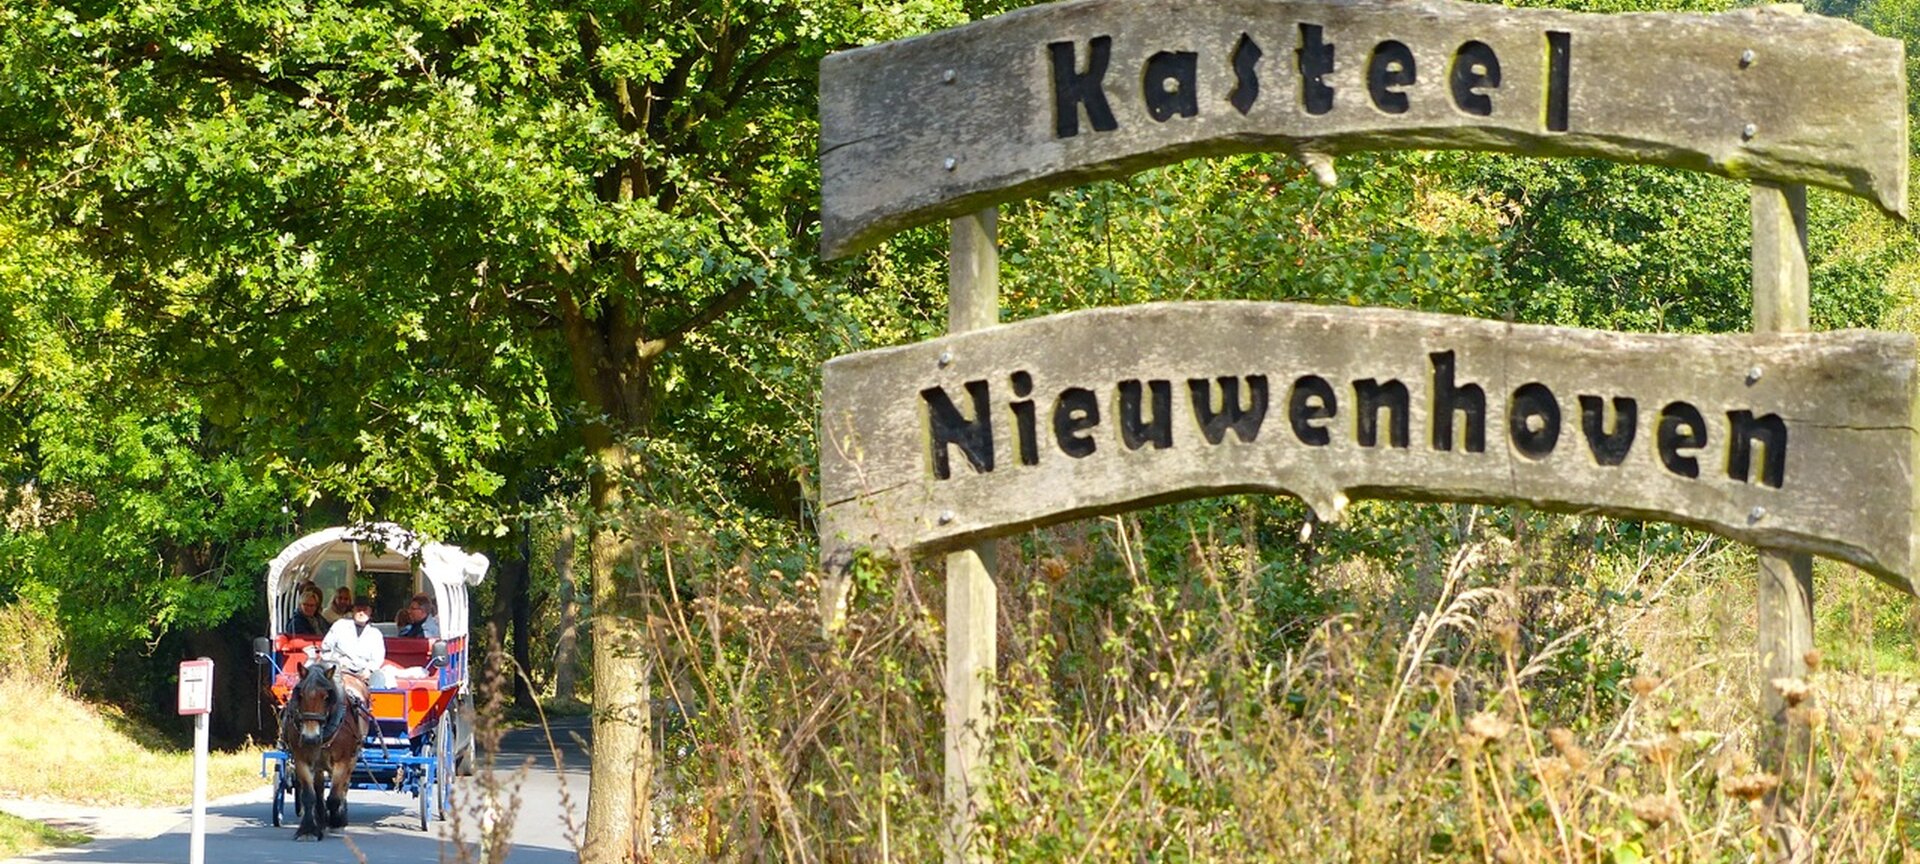 Kasteeldomein Nieuwenhoven - Kasteel Nieuwenhoven